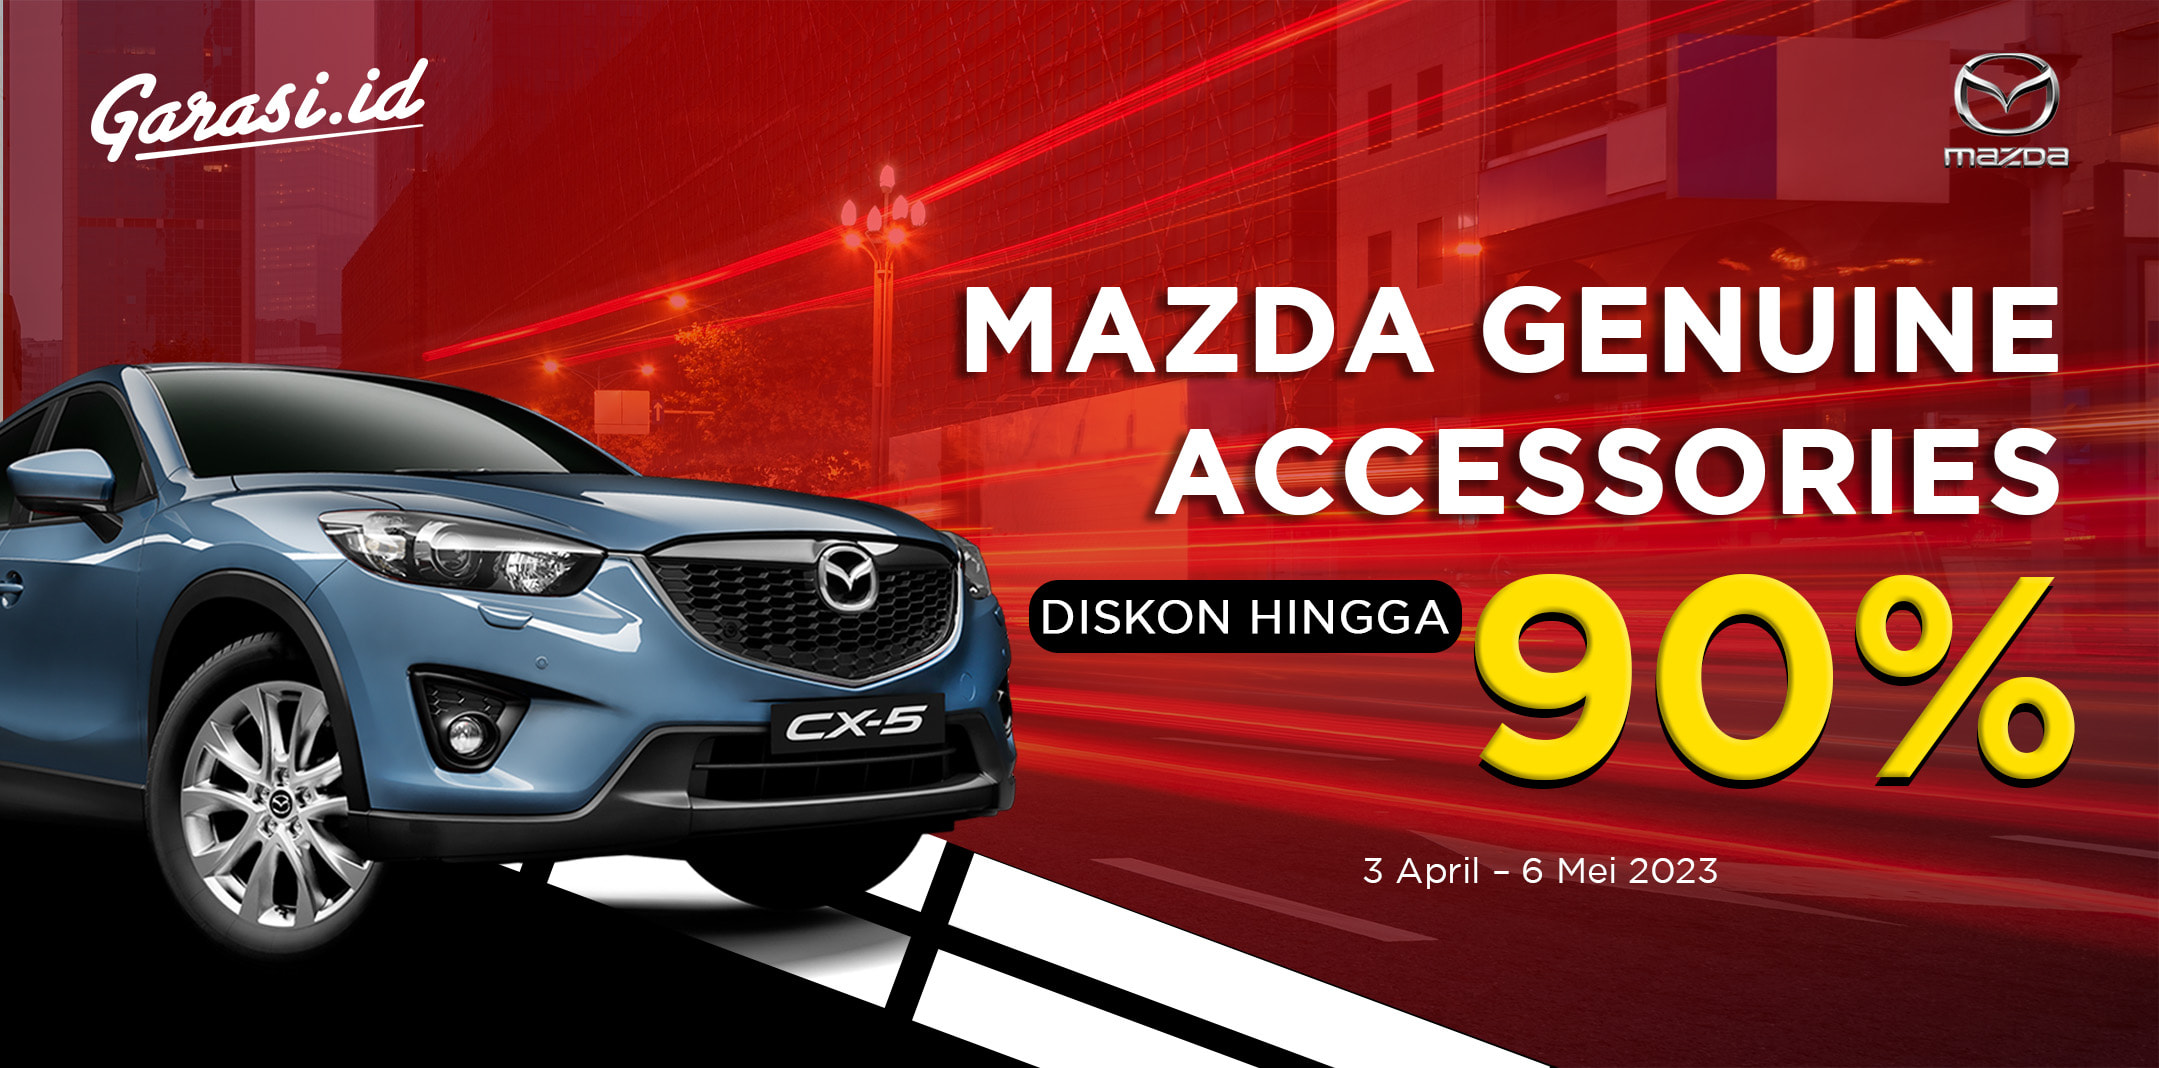 Diskon Hingga 90 % untuk pembelian genuine aksesoris mobil Mazda di bengkel resmi Eurokars Mazda Indonesia yang bekerjasama dengan Garasi.id.